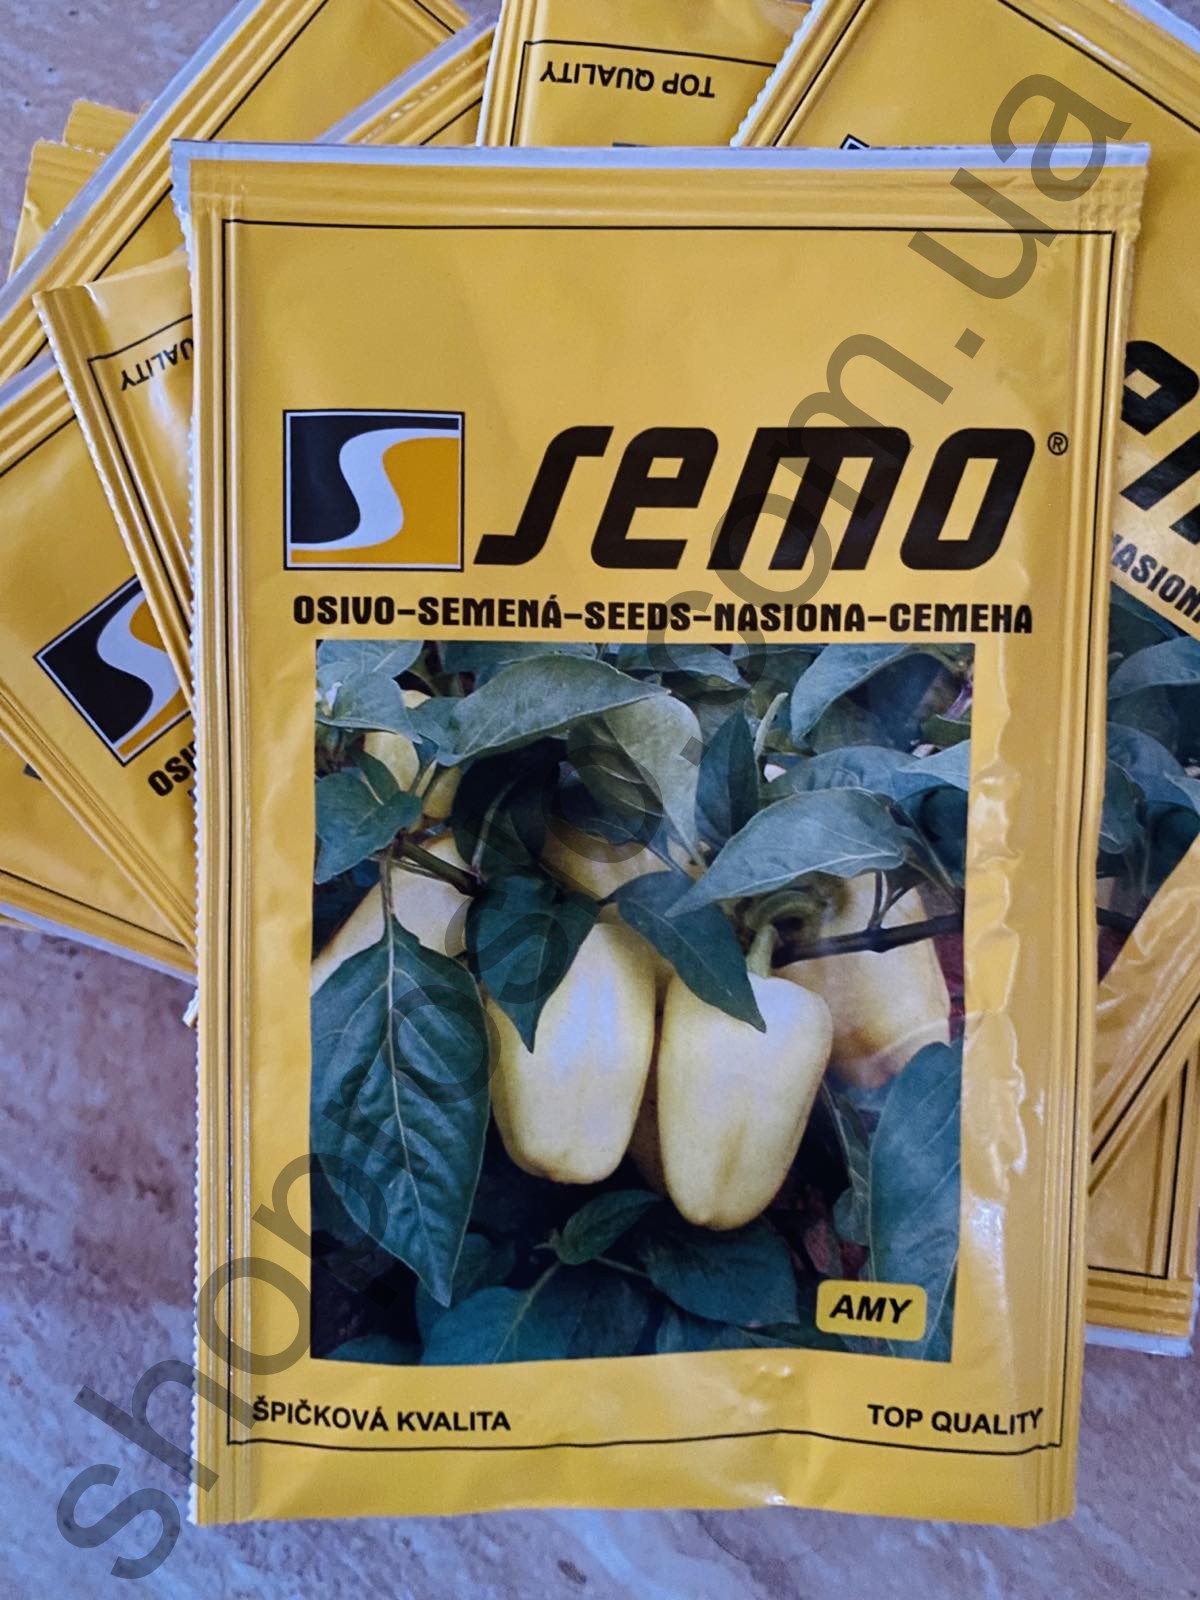 Семена перца Ами F1, ранний сорт, конический, "Semo" (Чехия), 50 г